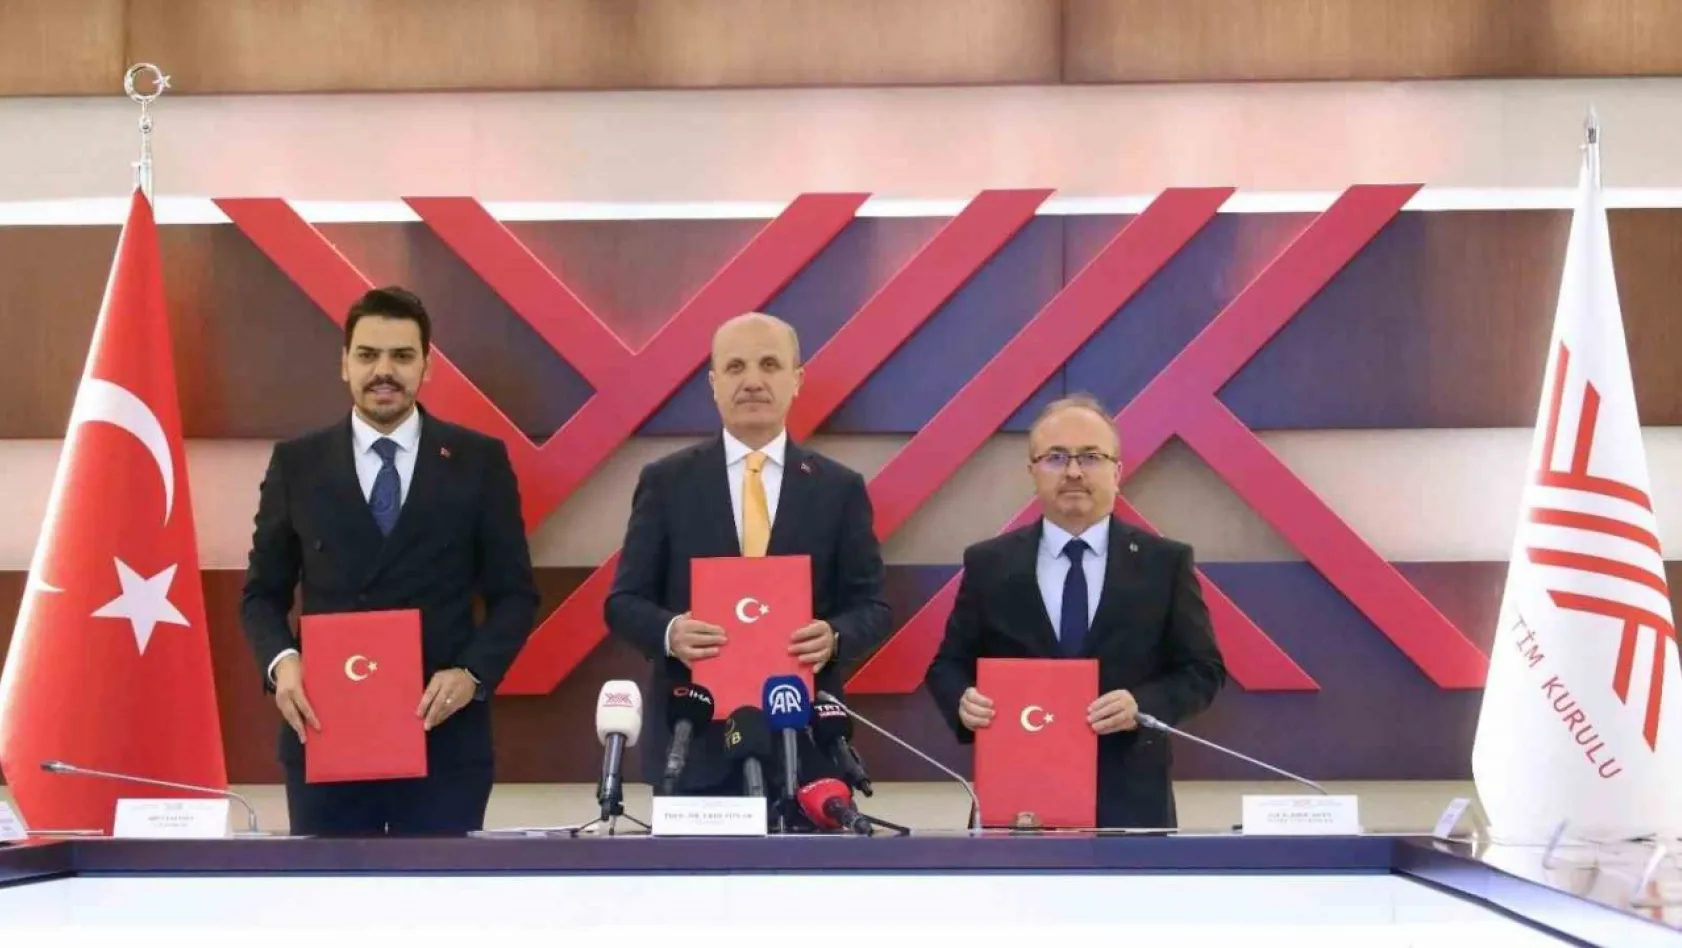 YÖK, YTB ve Türkiye Maarif Vakfı arasında eğitimde iş birliği protokolü imzalandı